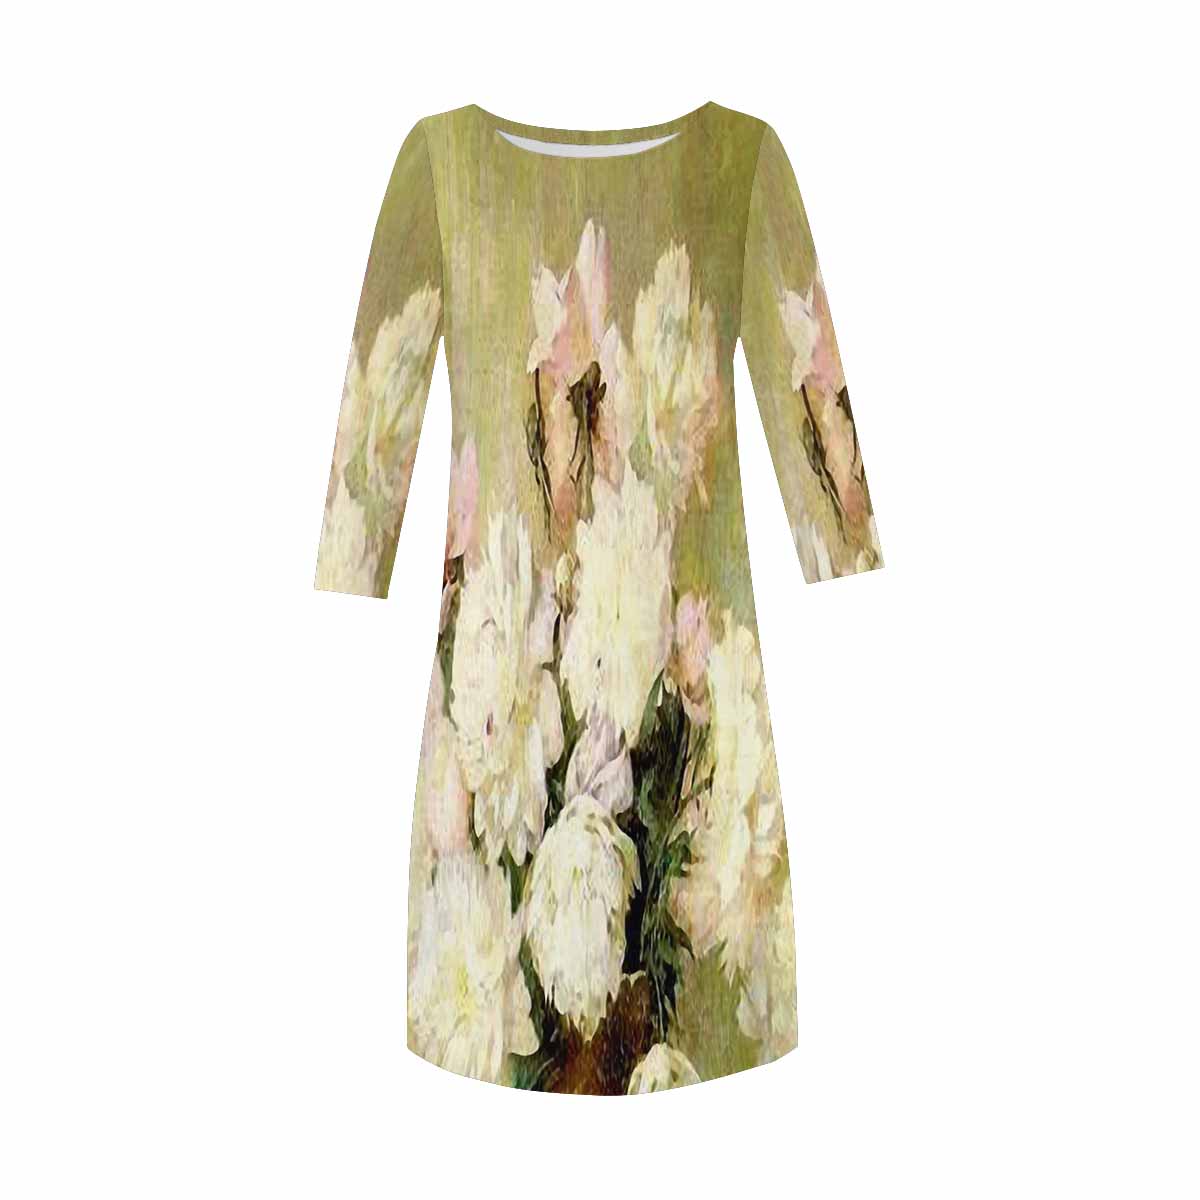 Vintage floral loose dress, model D29532 Design 35